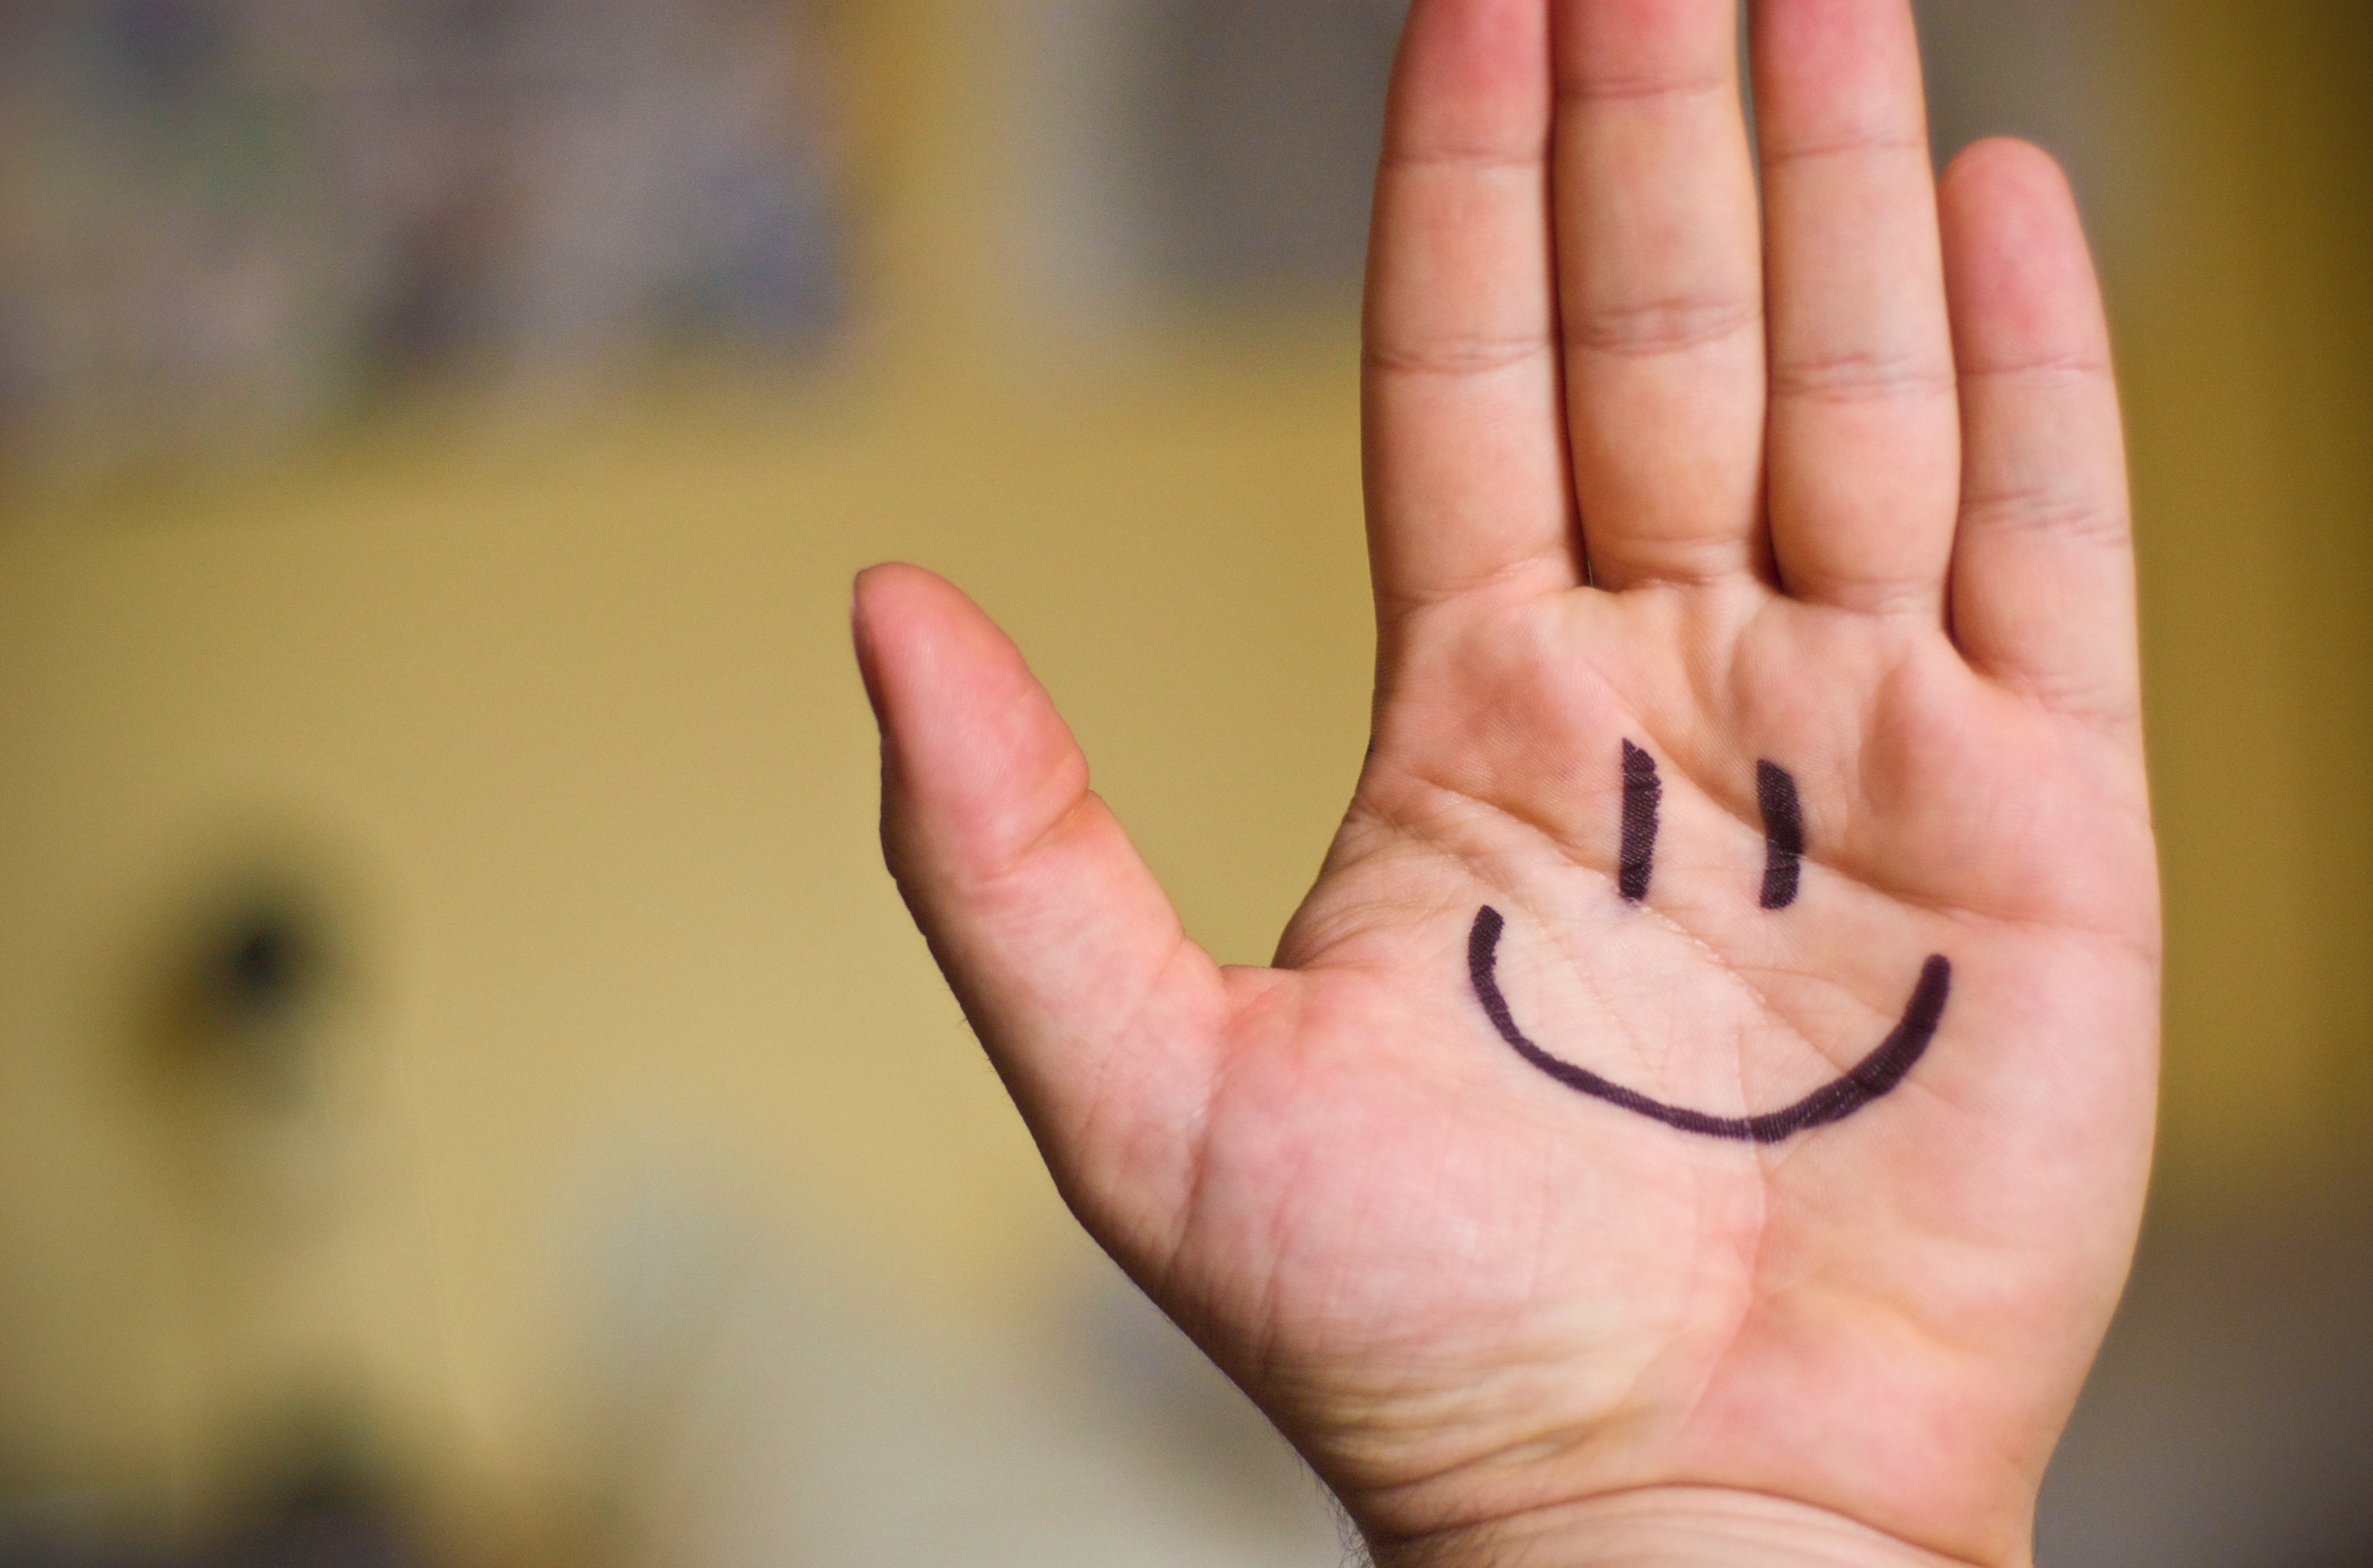 ۱۰ دلیل برای لبخند زدن/ هر روز لبخند بزنید تا زندگی شادتری داشته باشید